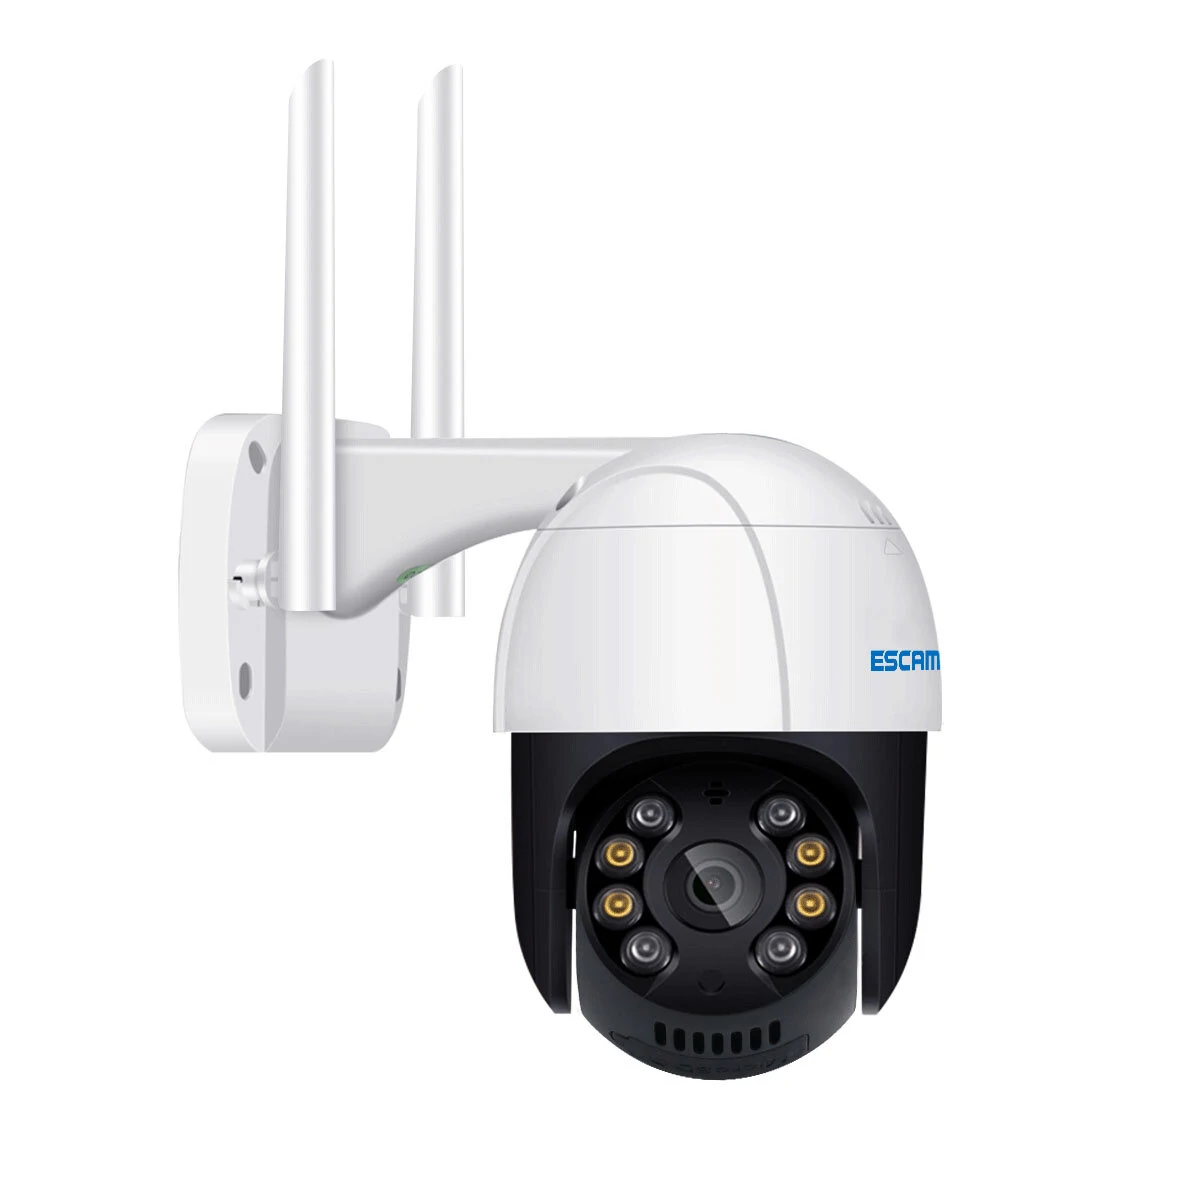 ЕСЦАМ КФ518 - ротирајућа сигурносна камера са 5 мегапиксела